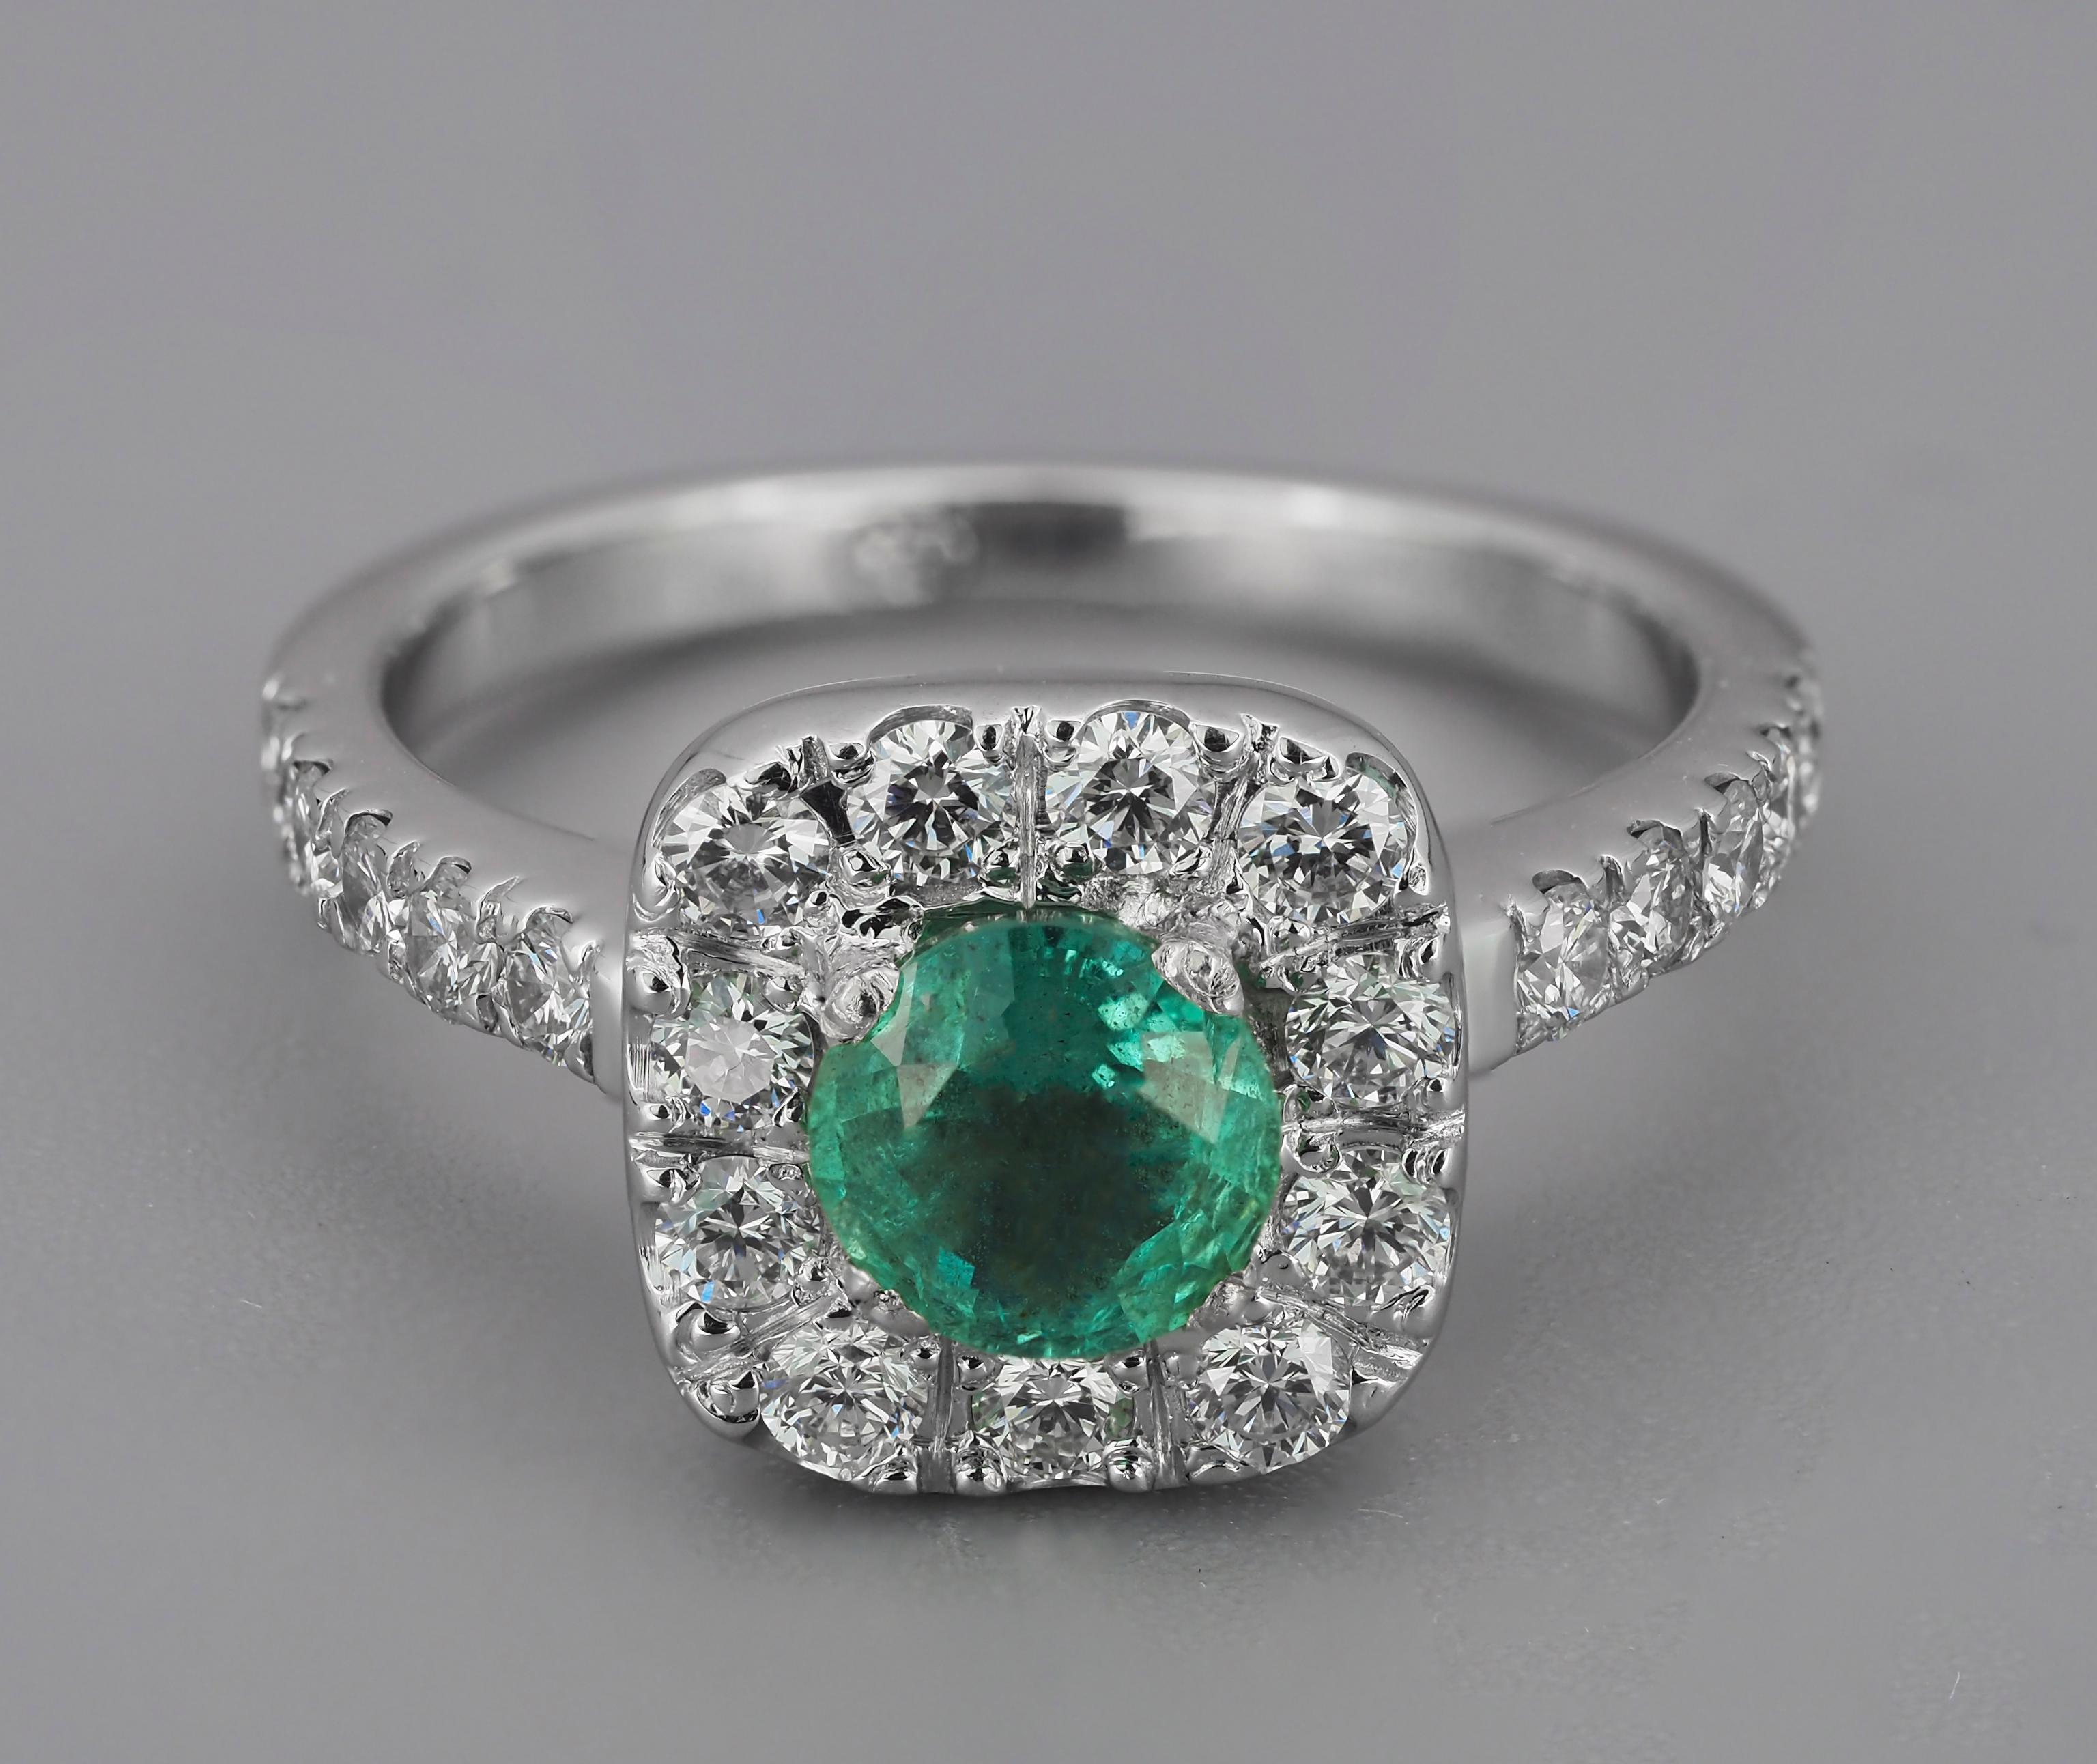 Diamant Halo Smaragd 14k Gold Ring. 
Goldring mit Smaragd und Diamanten. Vintage Smaragd Ring. Smaragdfarbener Verlobungsring. Statement-Goldring.

Metall: 14k Gold
Gewicht - 3 g - abhängig von der Größe.

Zentraler Stein: Smaragd
Schnitt: